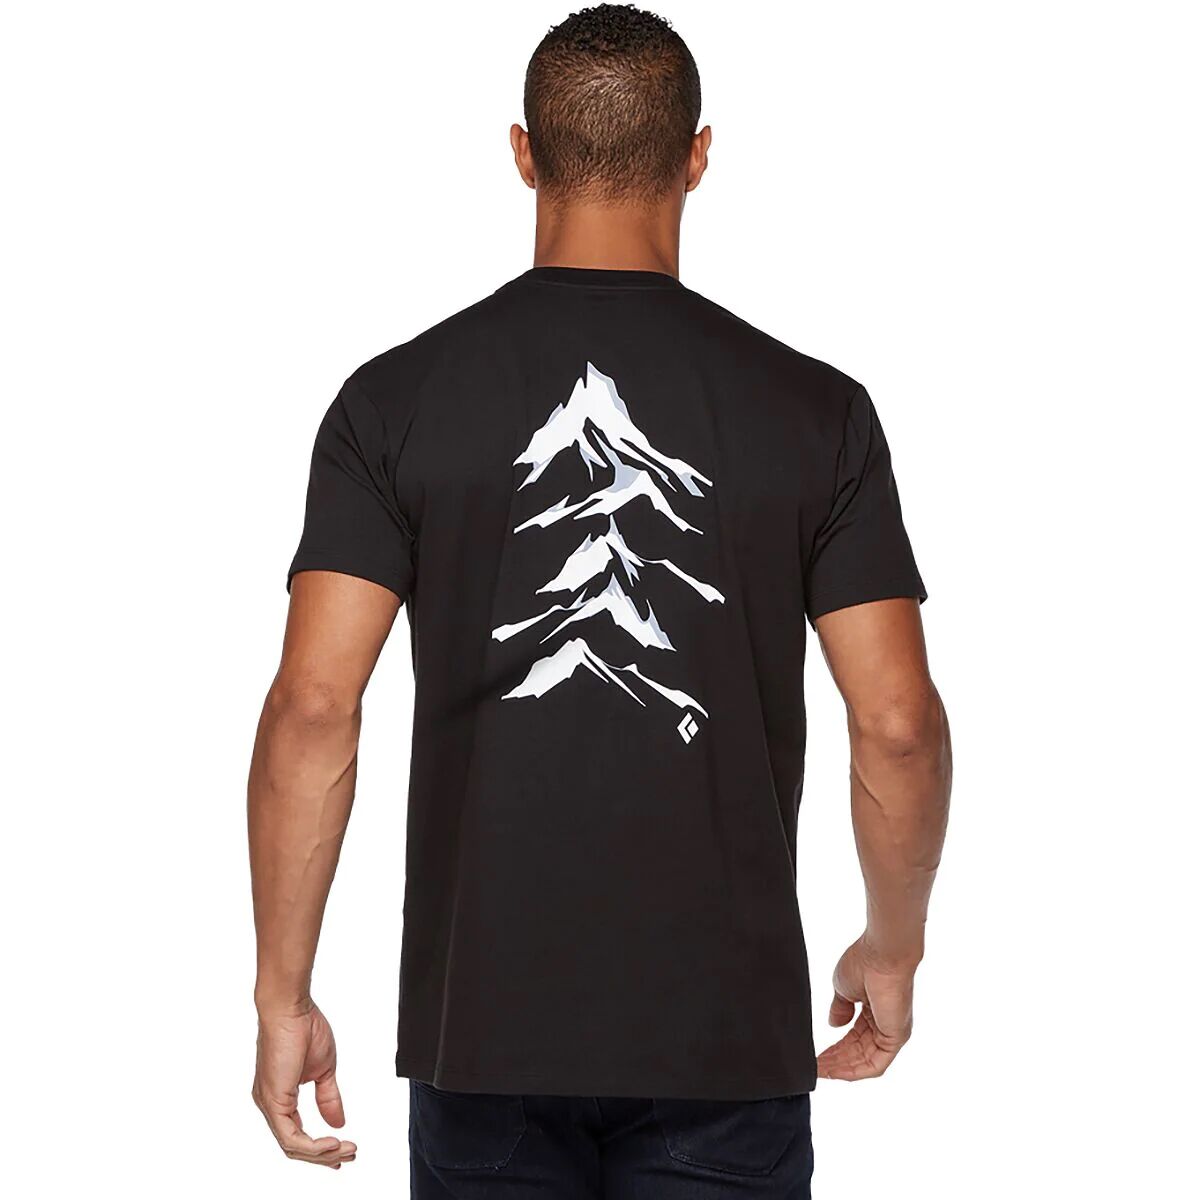 Black Diamond Peaks T-Shirt - Men's